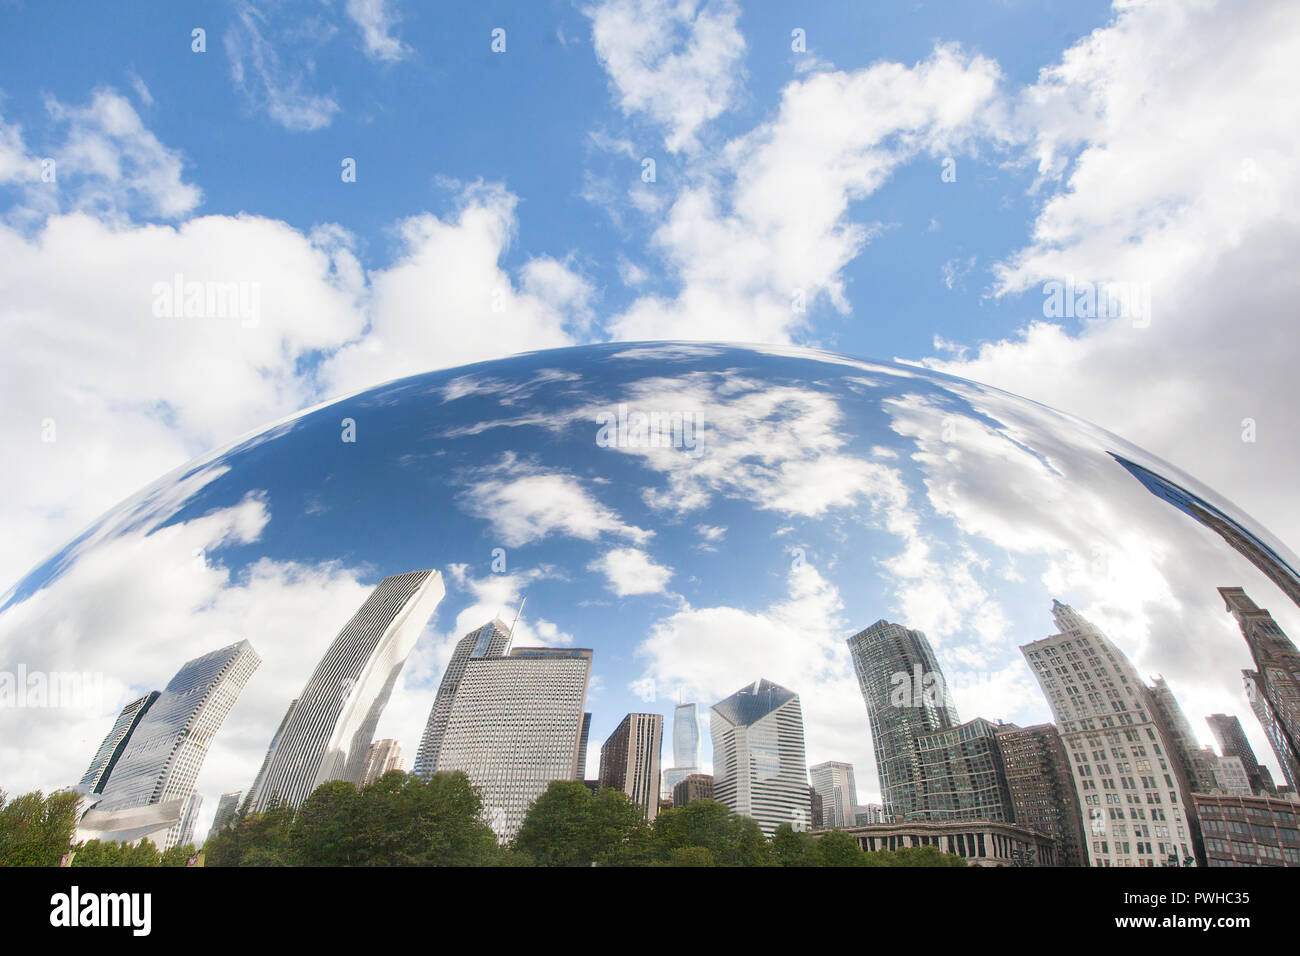 El centro de los edificios se refleja en la superficie del espejo de la escultura de frijoles en el Millennium Park en Chicago, Illinois. Foto de stock